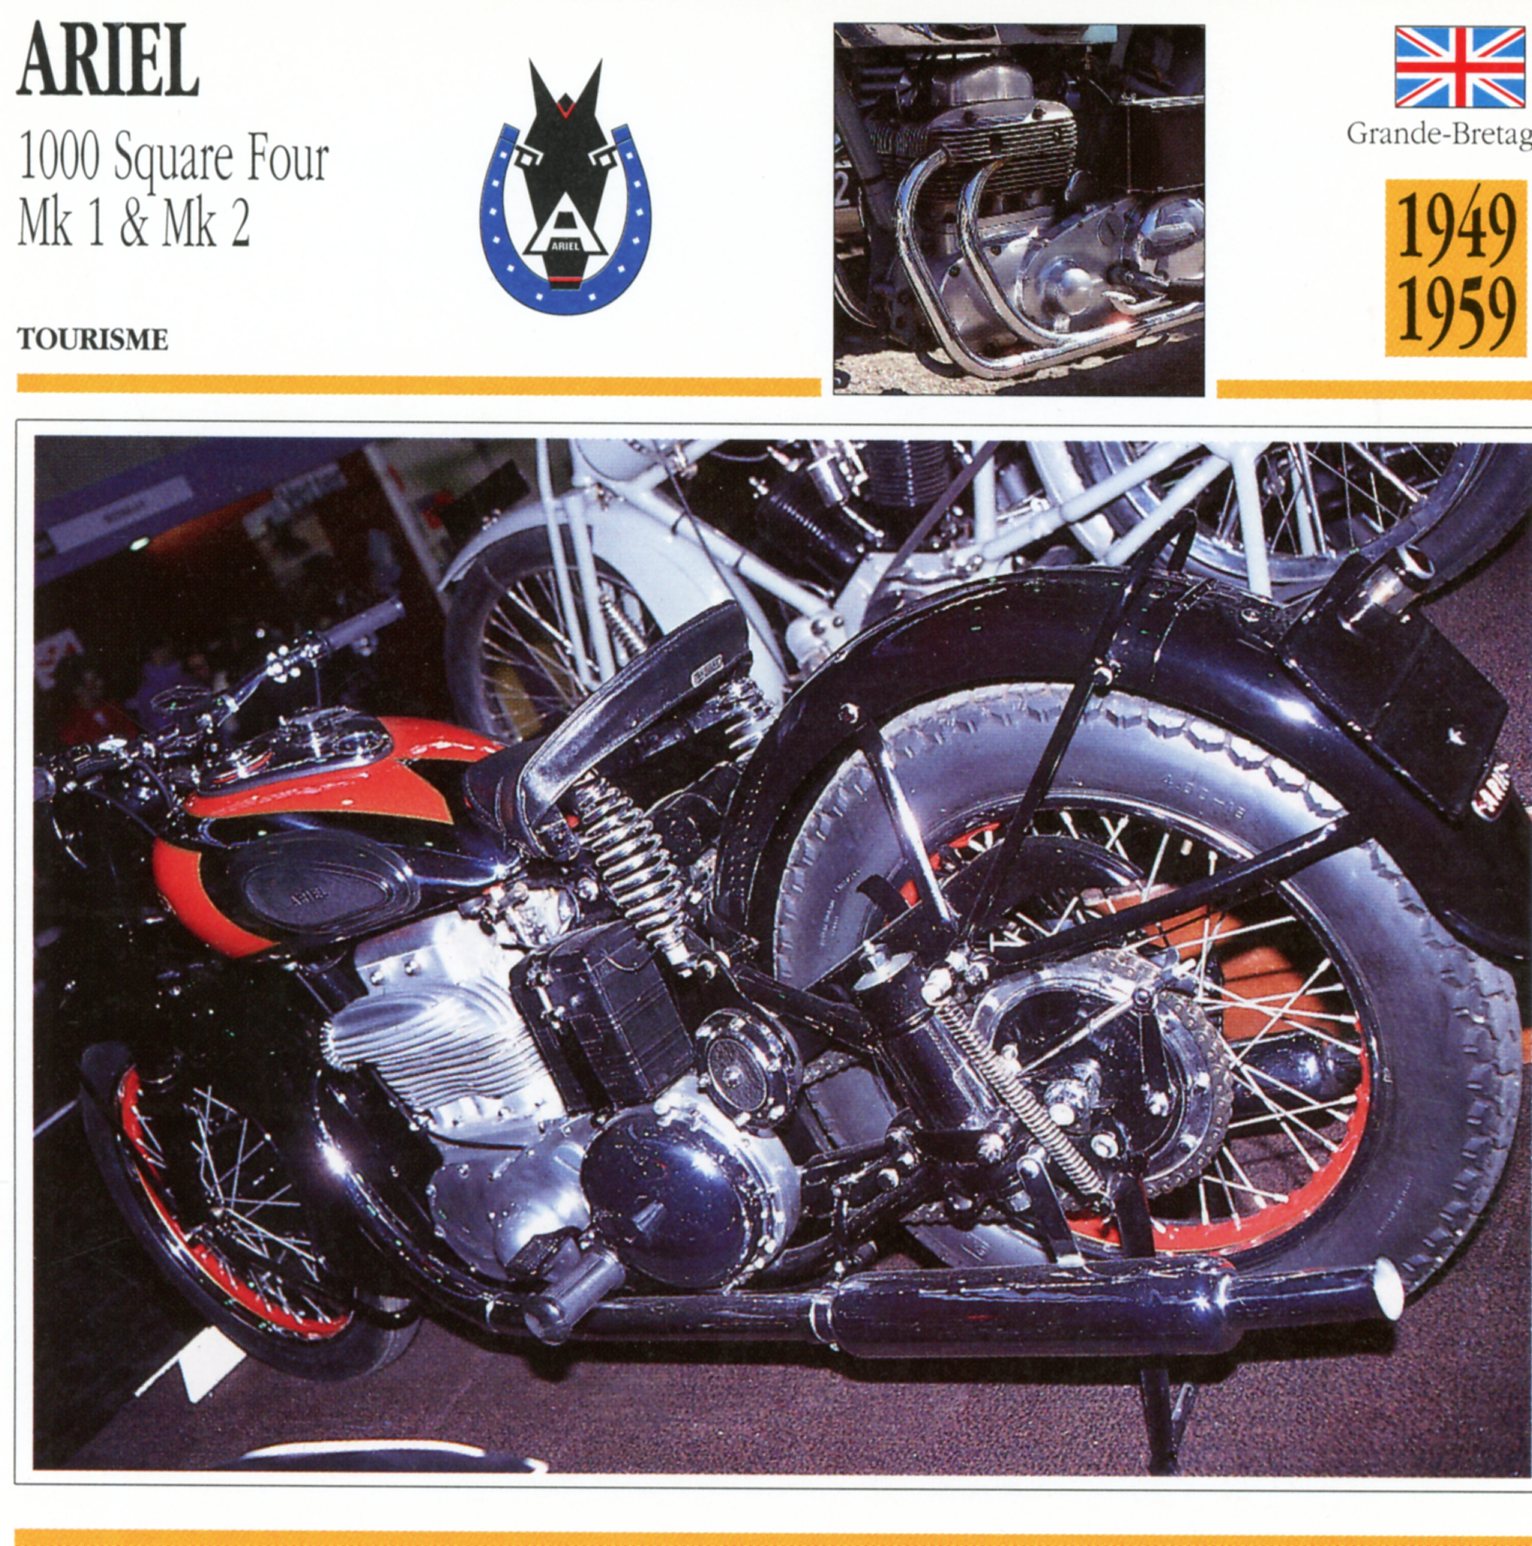 ARIEL 1000 SQUARE FOUR MK1 MK2  -CARTE-CARD-FICHE-MOTO-LEMASTERBROCKERS